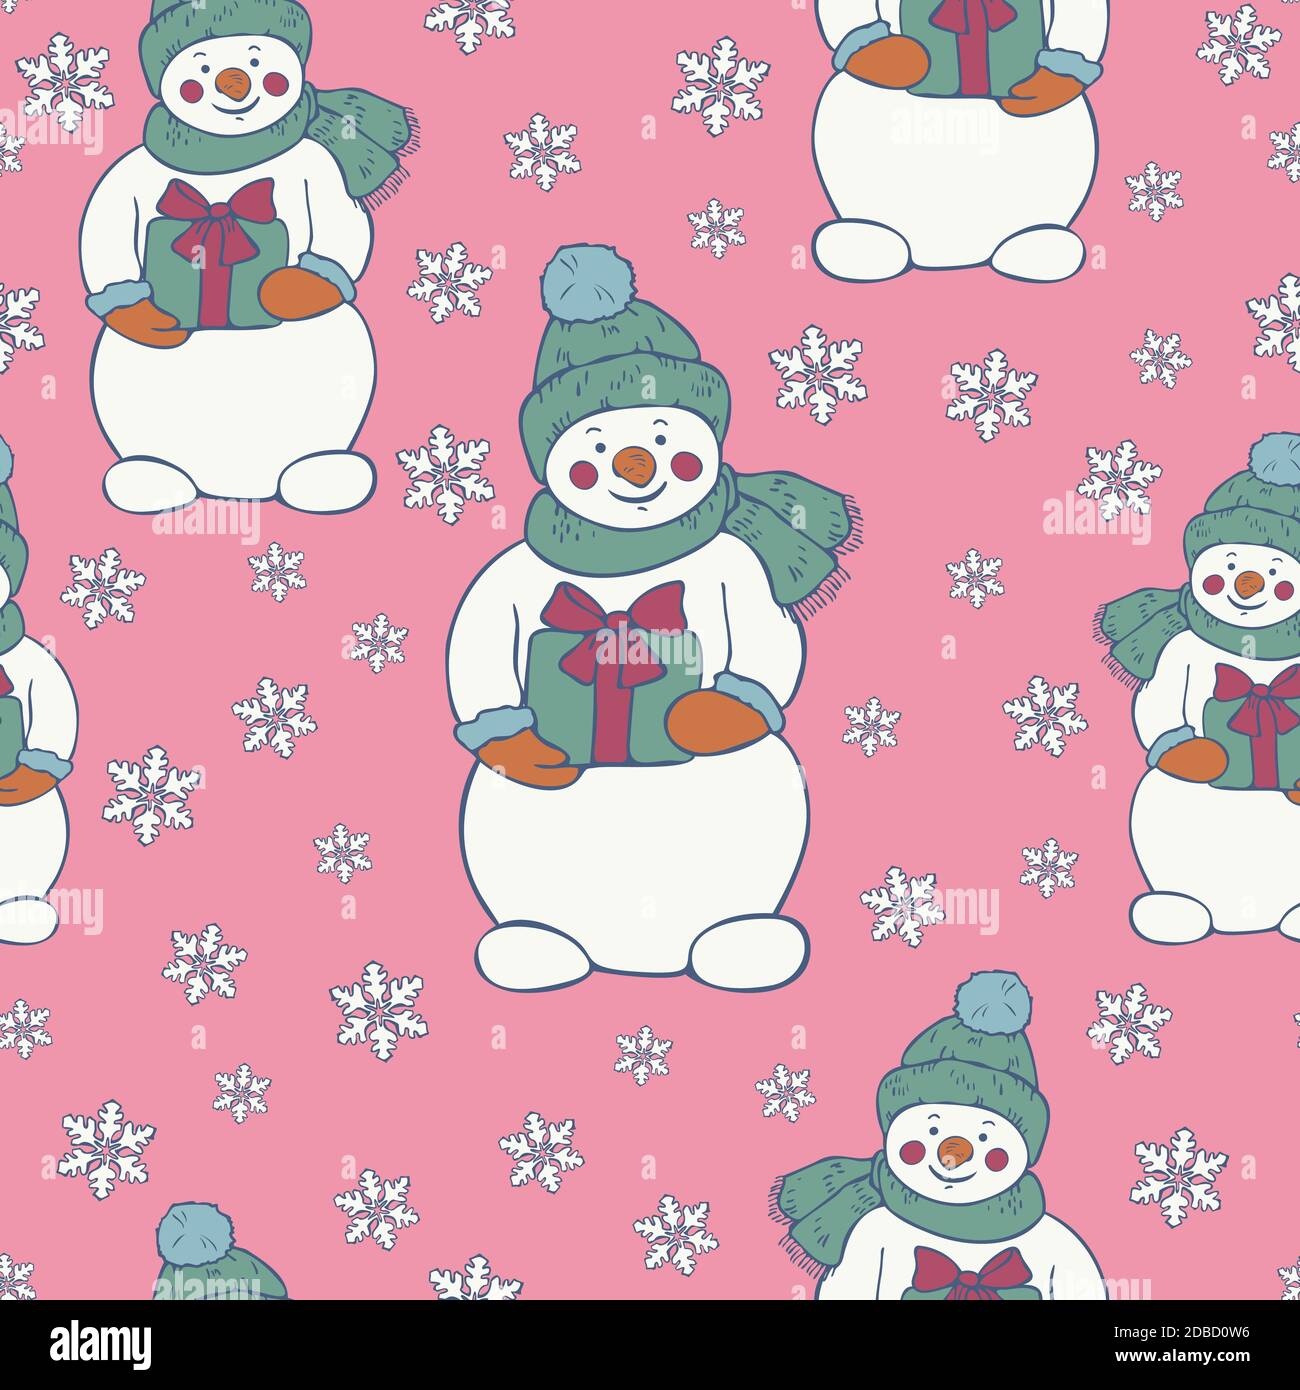 Vektor nahtlose Muster von Schneemännern und Schneeflocken auf einem hellrosa Hintergrund. Neujahr Weihnachtsdesign. Stock Vektor